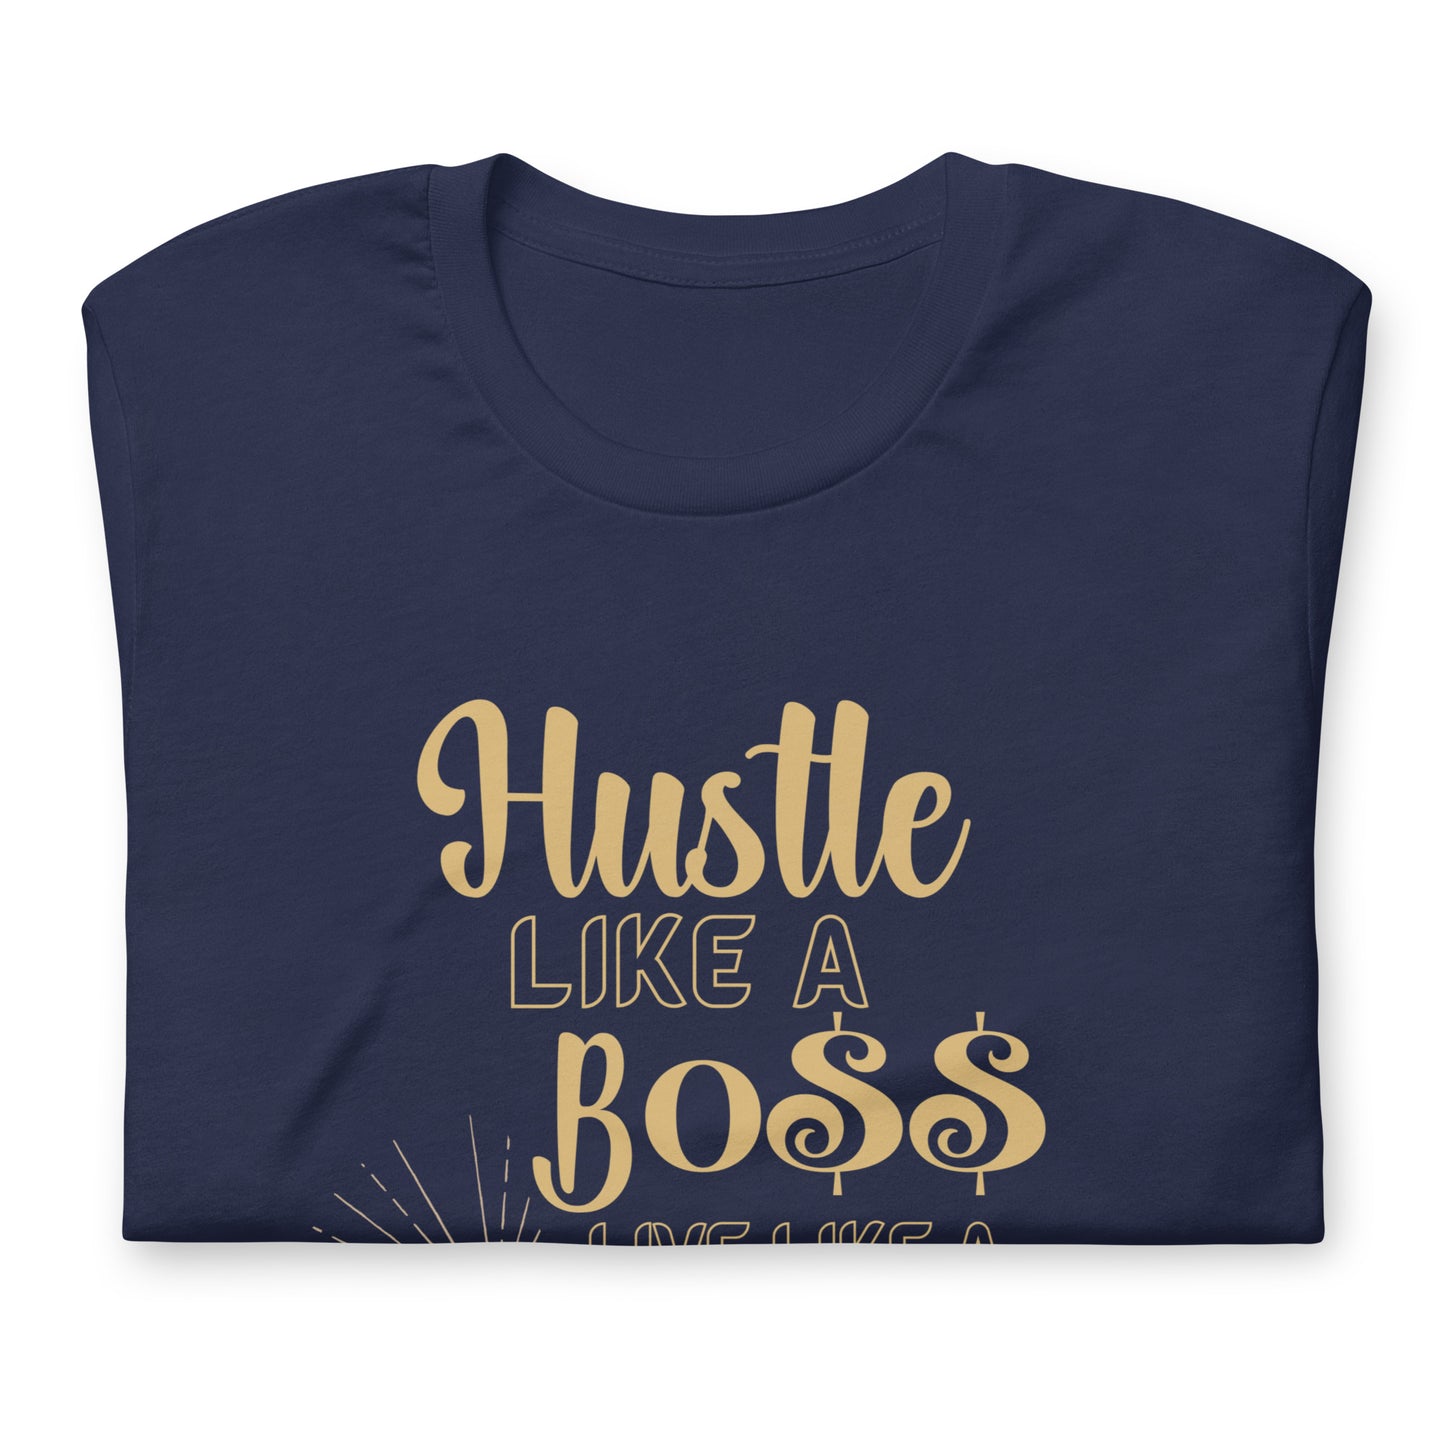 Hustle Like a BO$$